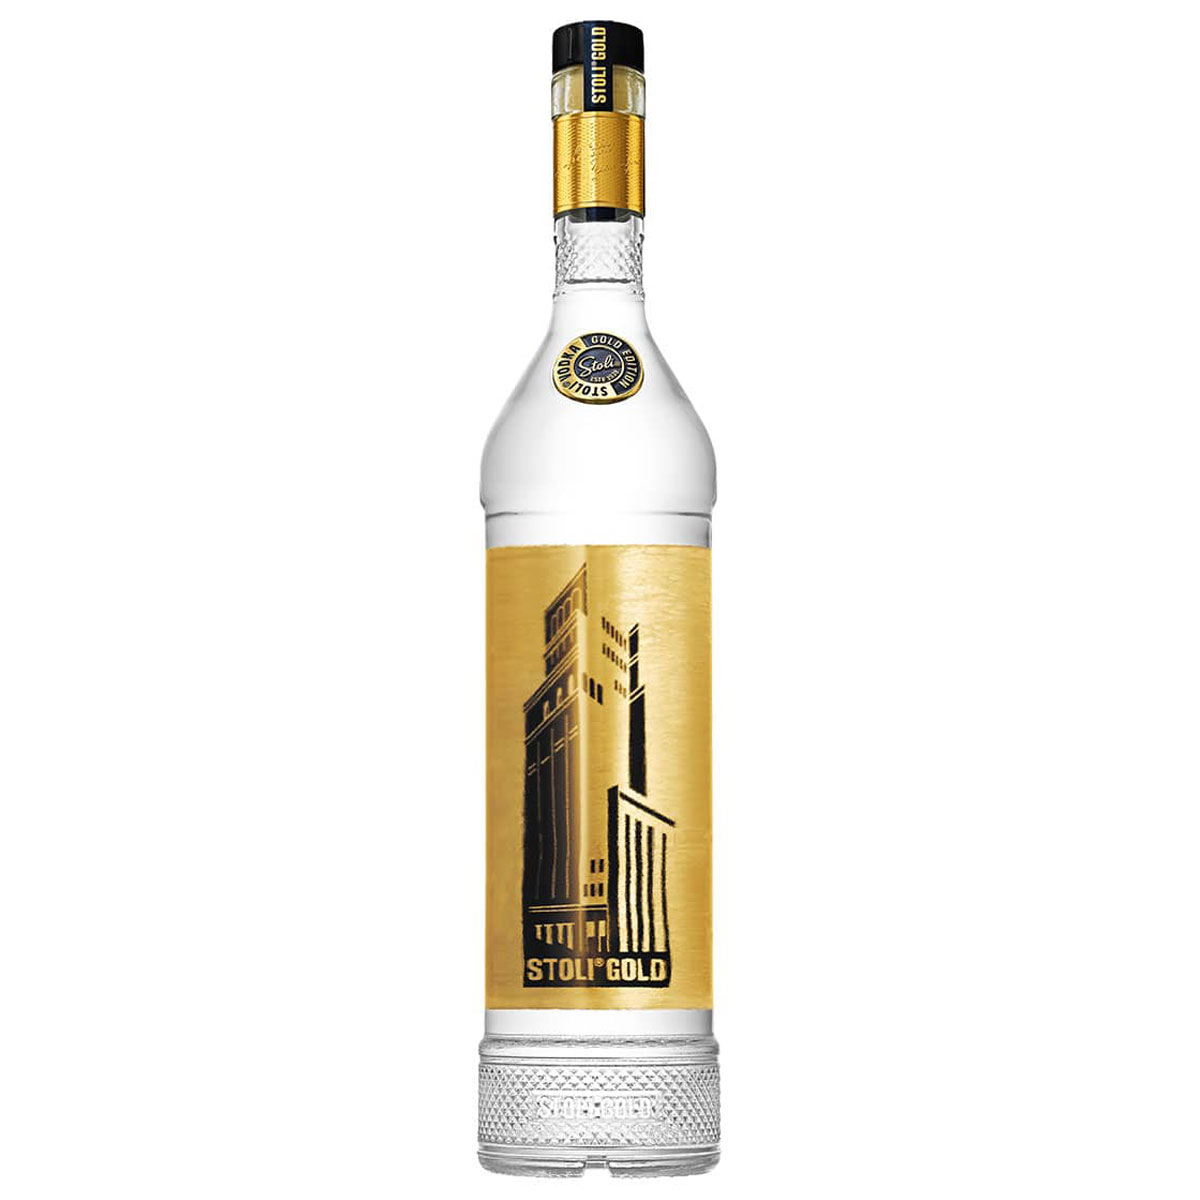 a bottle of stolichnaya gold vodka